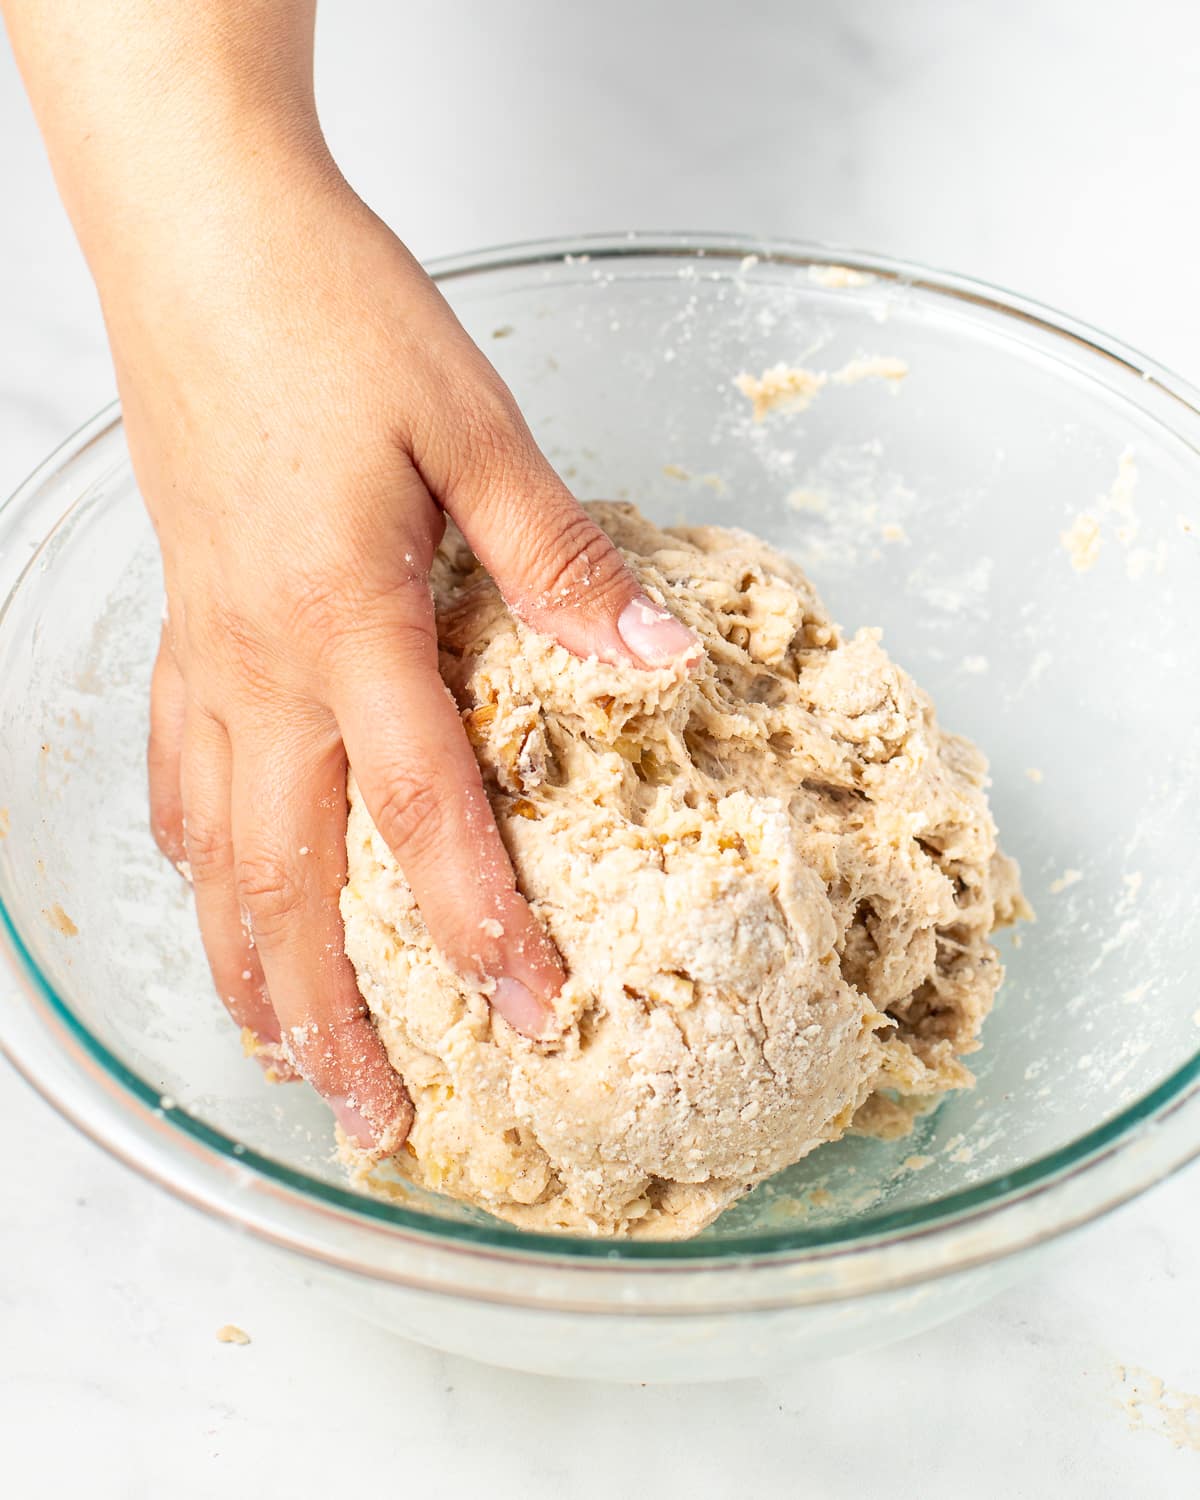 scone dough in a bowl